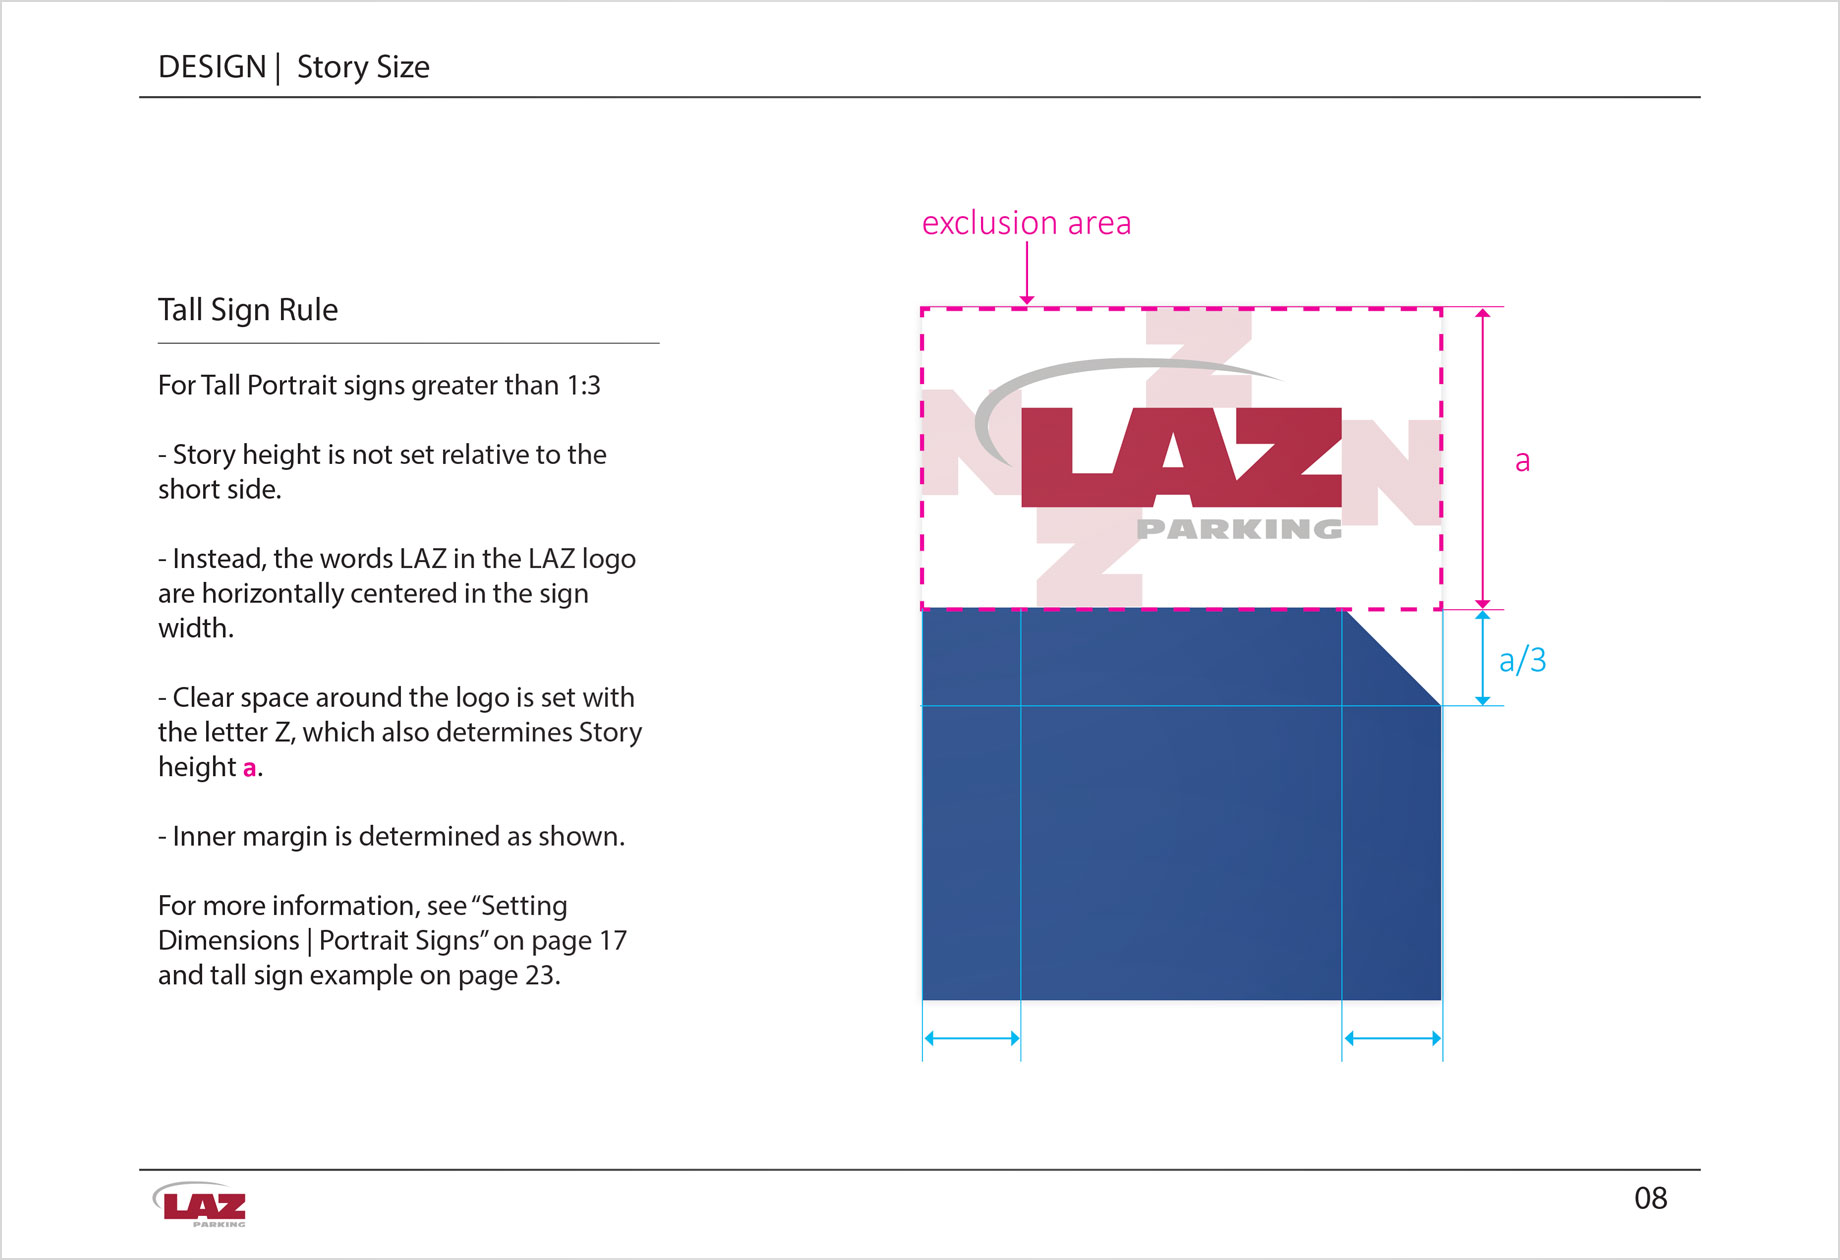 LAZ story size rules